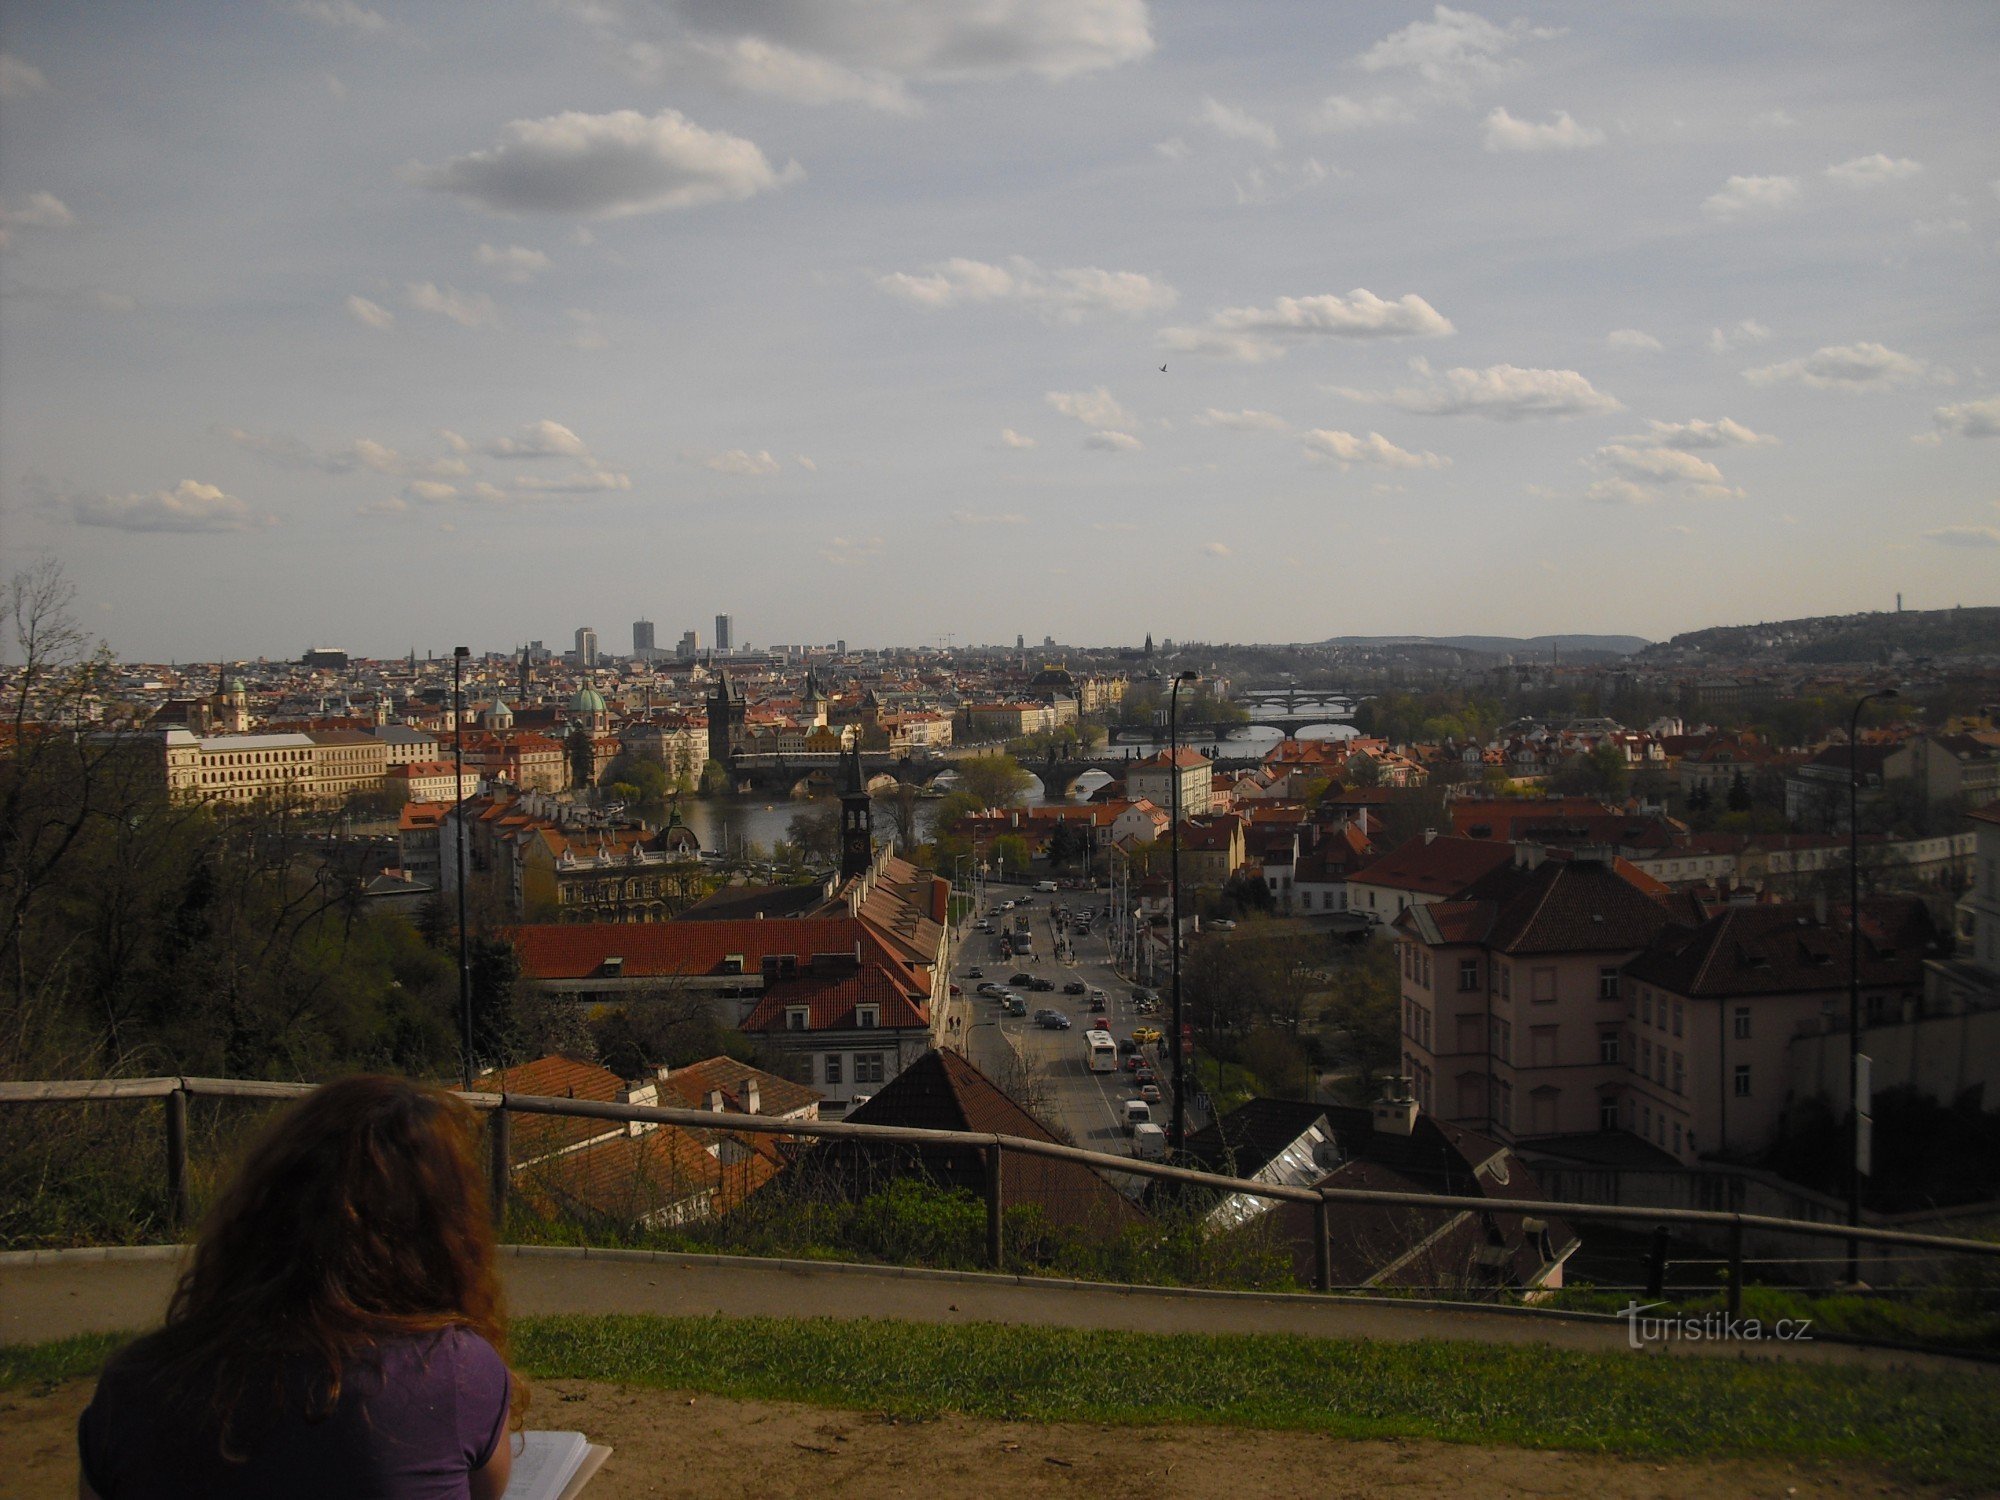 Capitala Praga